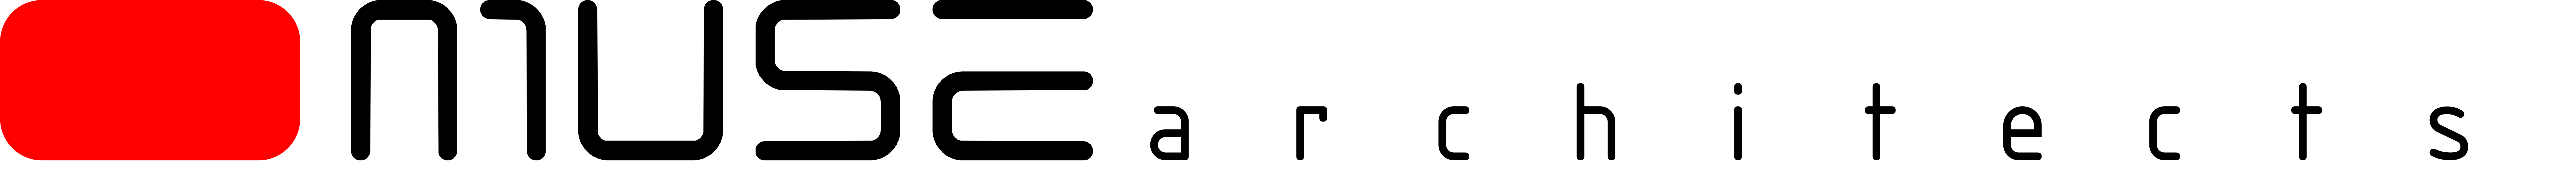 Muse Architects Logo